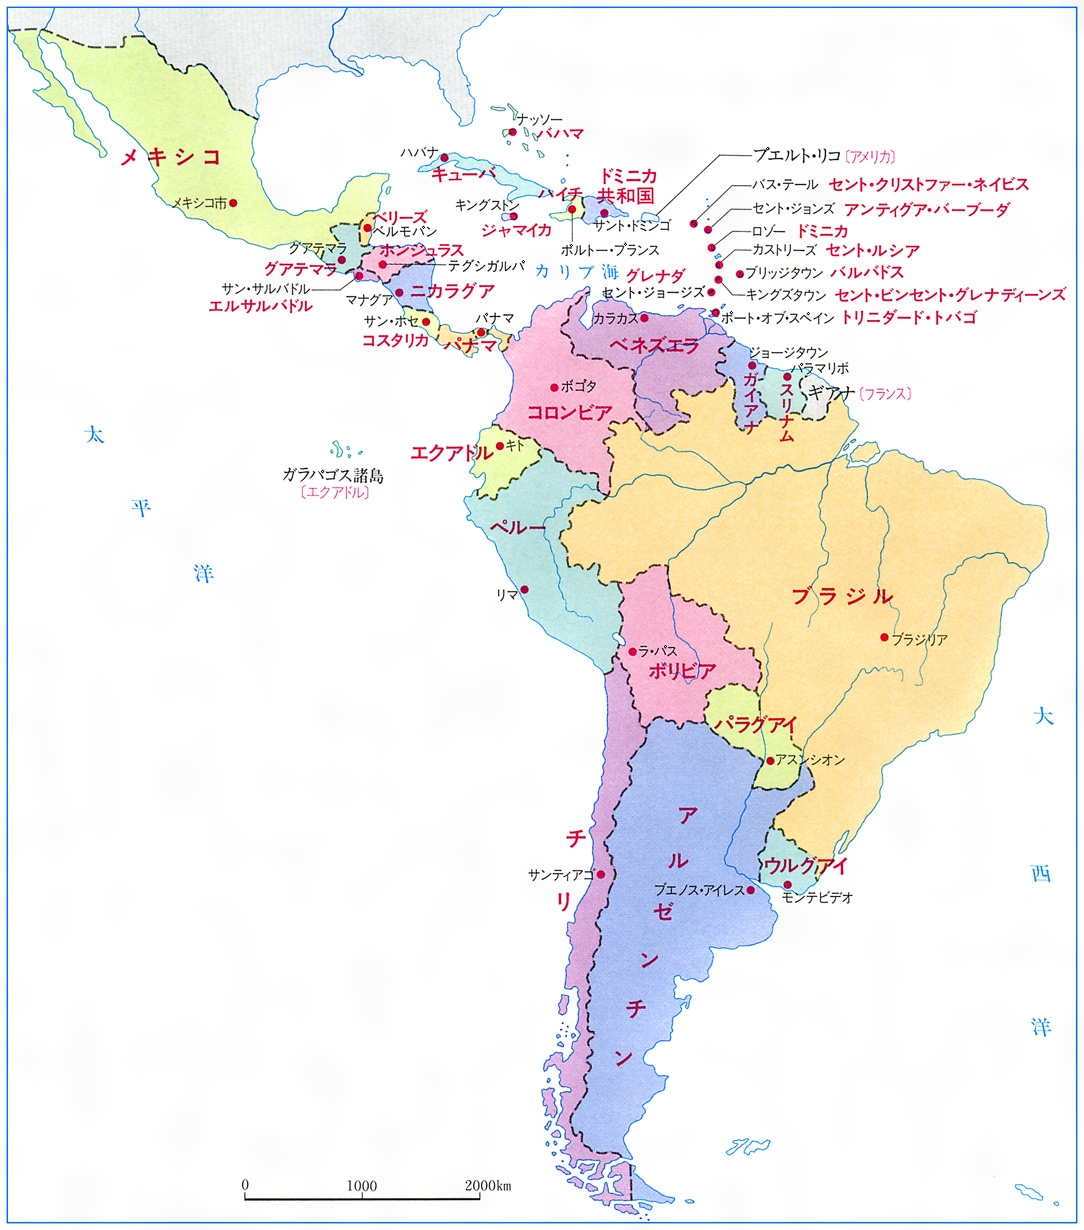 ヨーロッパ諸国によるアメリカ大陸の植民地化 - European colonization of the Americas ...